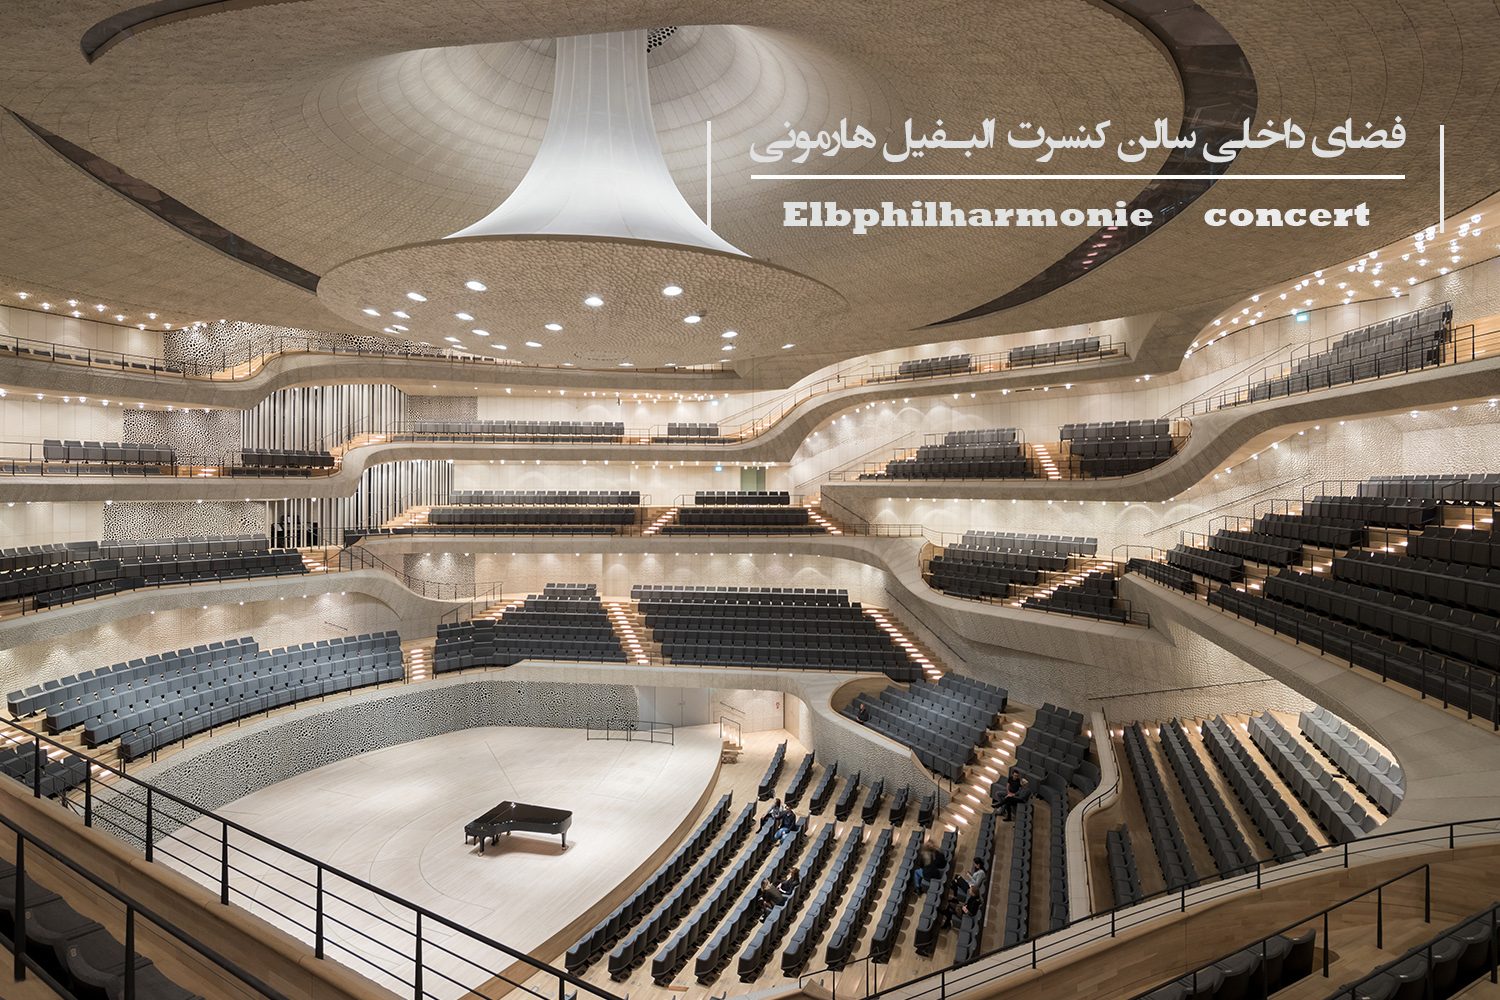 فضای داخلی کنسرت البفیل هارمونی